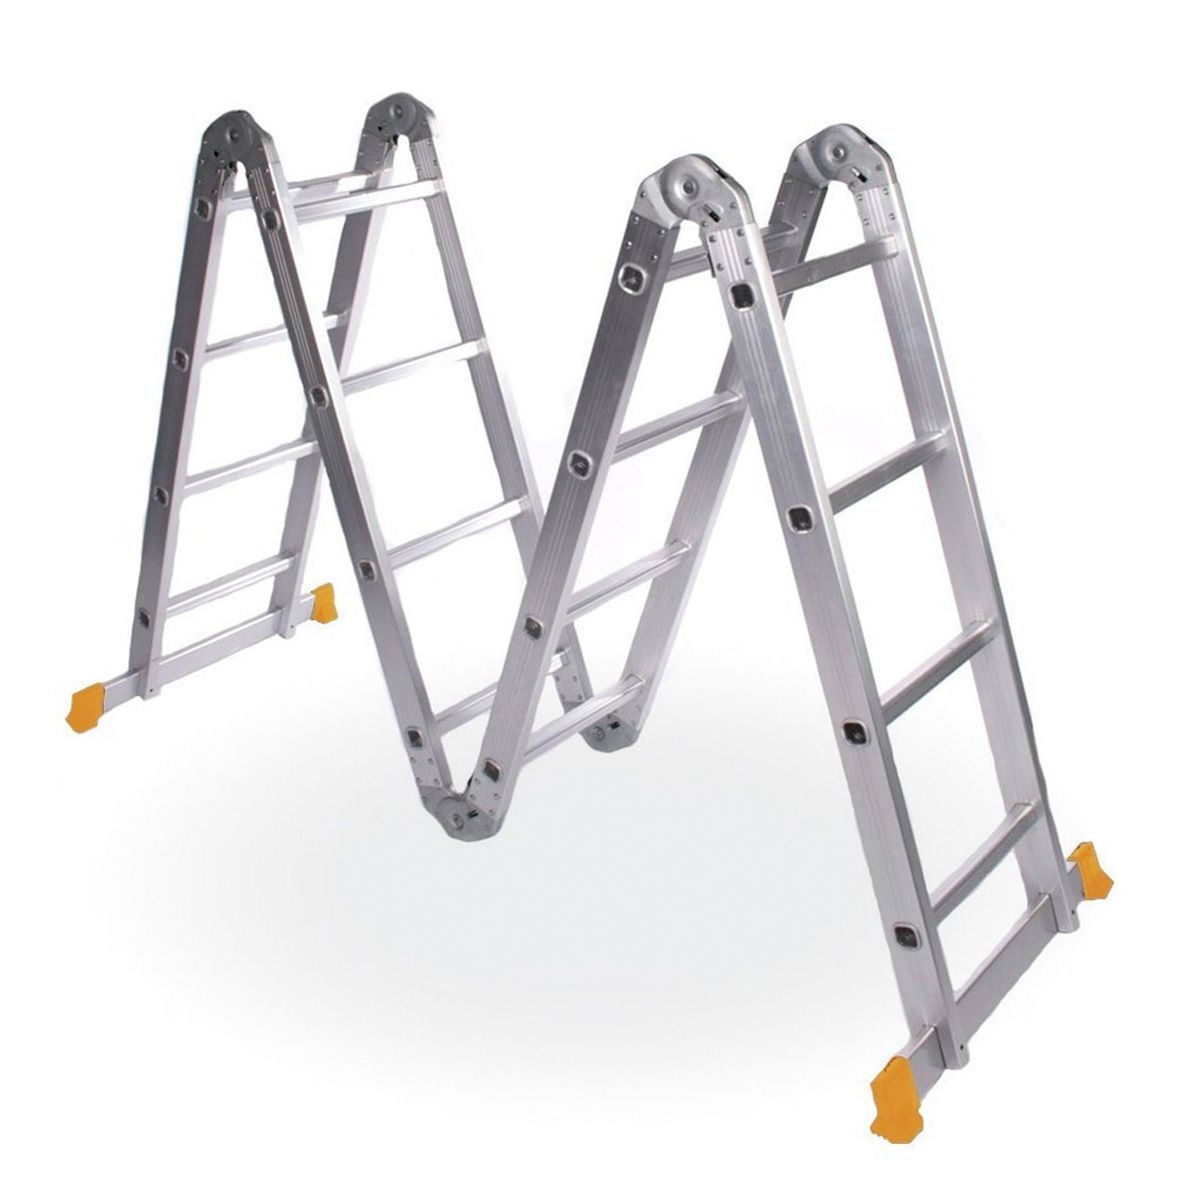 Escalera Plegable Articulada Aluminio 4x4 4.7 Mt Lusqtoff - Pinturerias  Sagitario